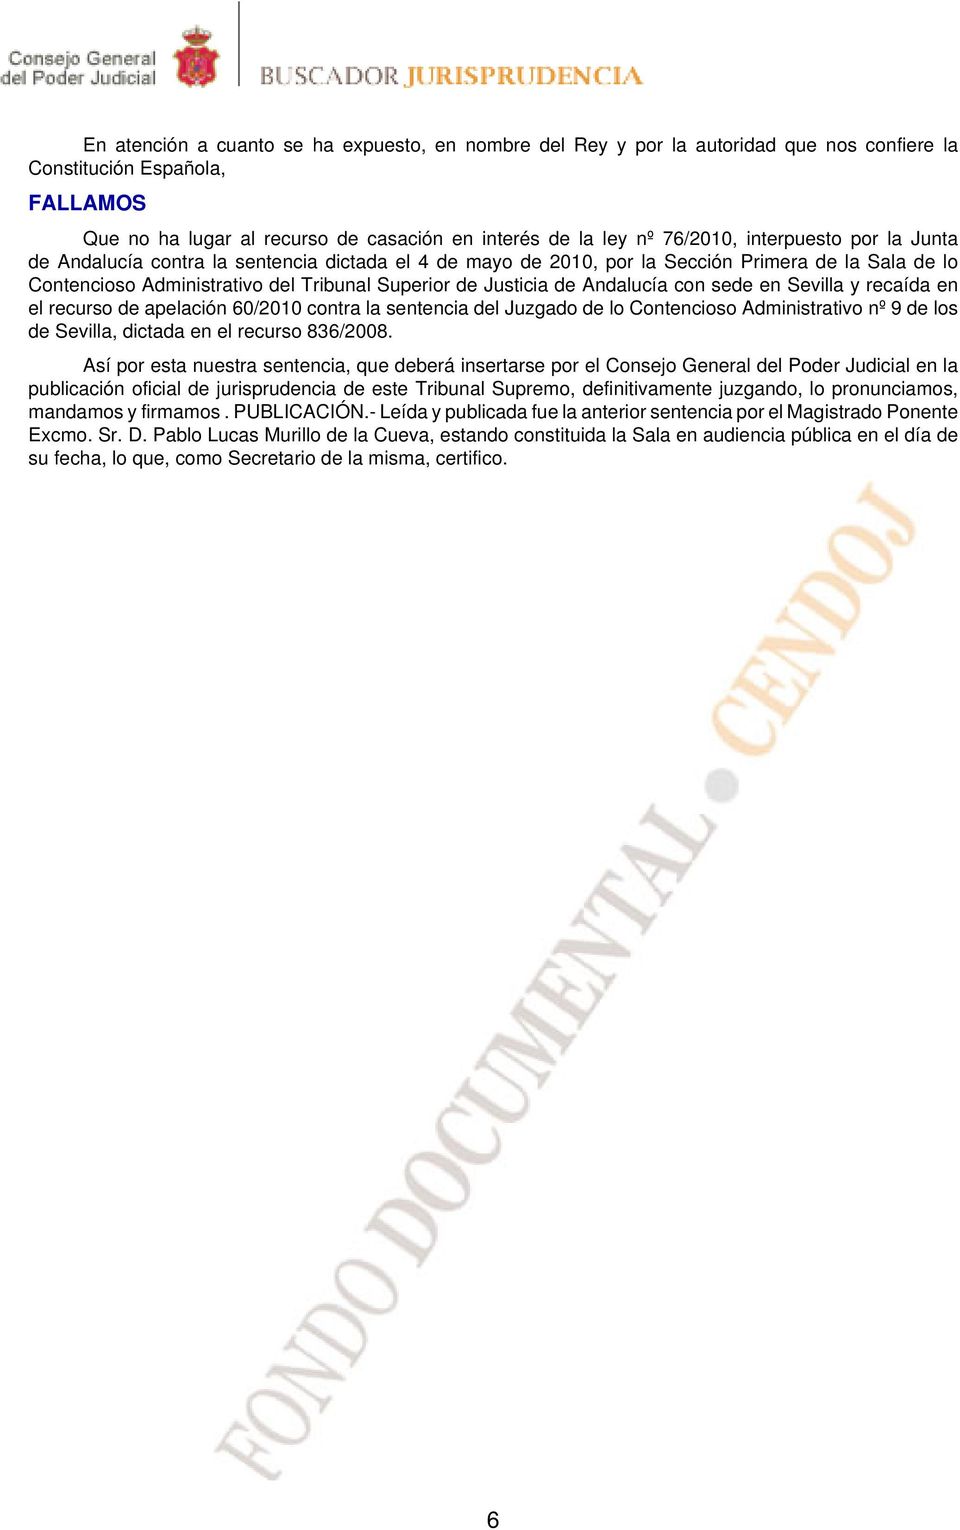 Andalucía con sede en Sevilla y recaída en el recurso de apelación 60/2010 contra la sentencia del Juzgado de lo Contencioso Administrativo nº 9 de los de Sevilla, dictada en el recurso 836/2008.